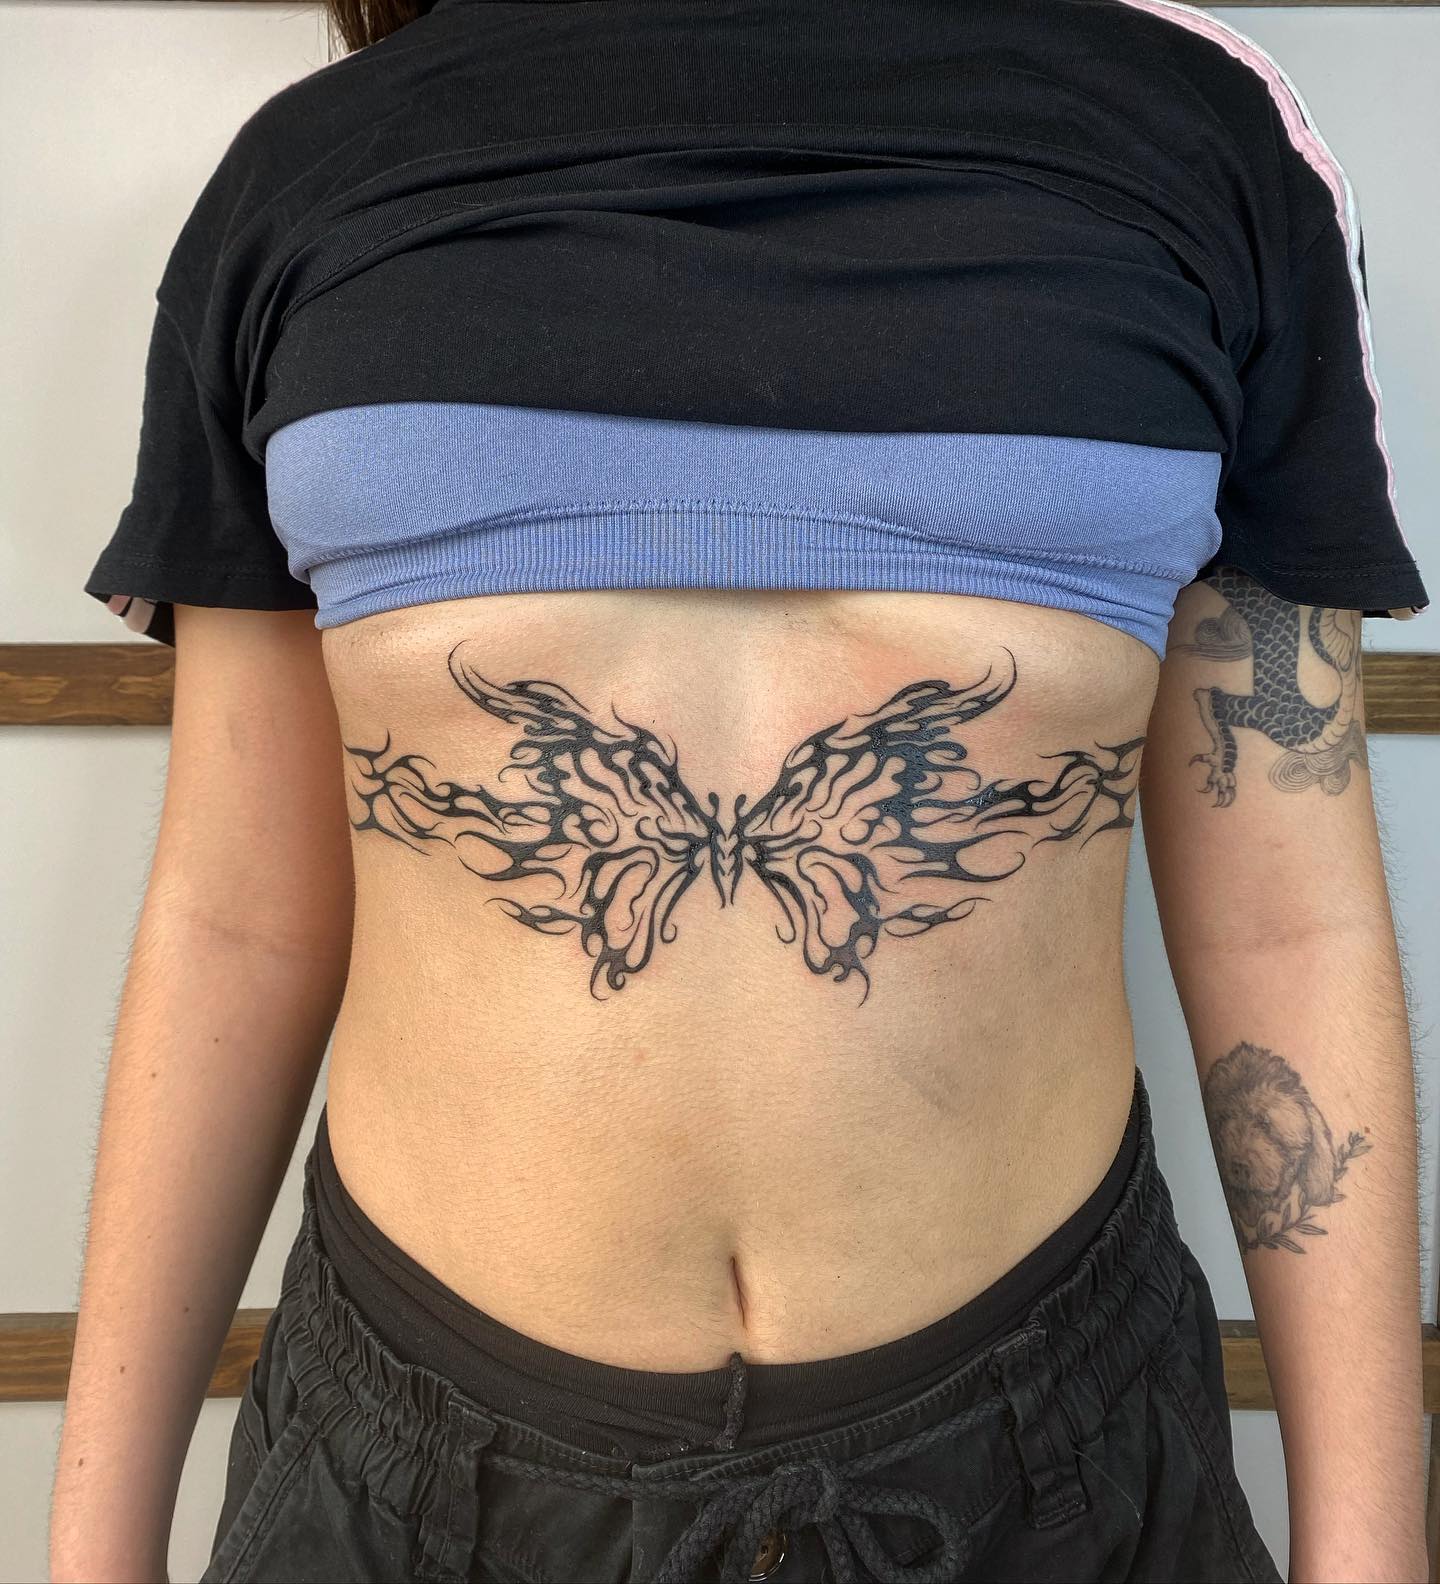 Tatuaje de mariposa diseñado entre los pechos.